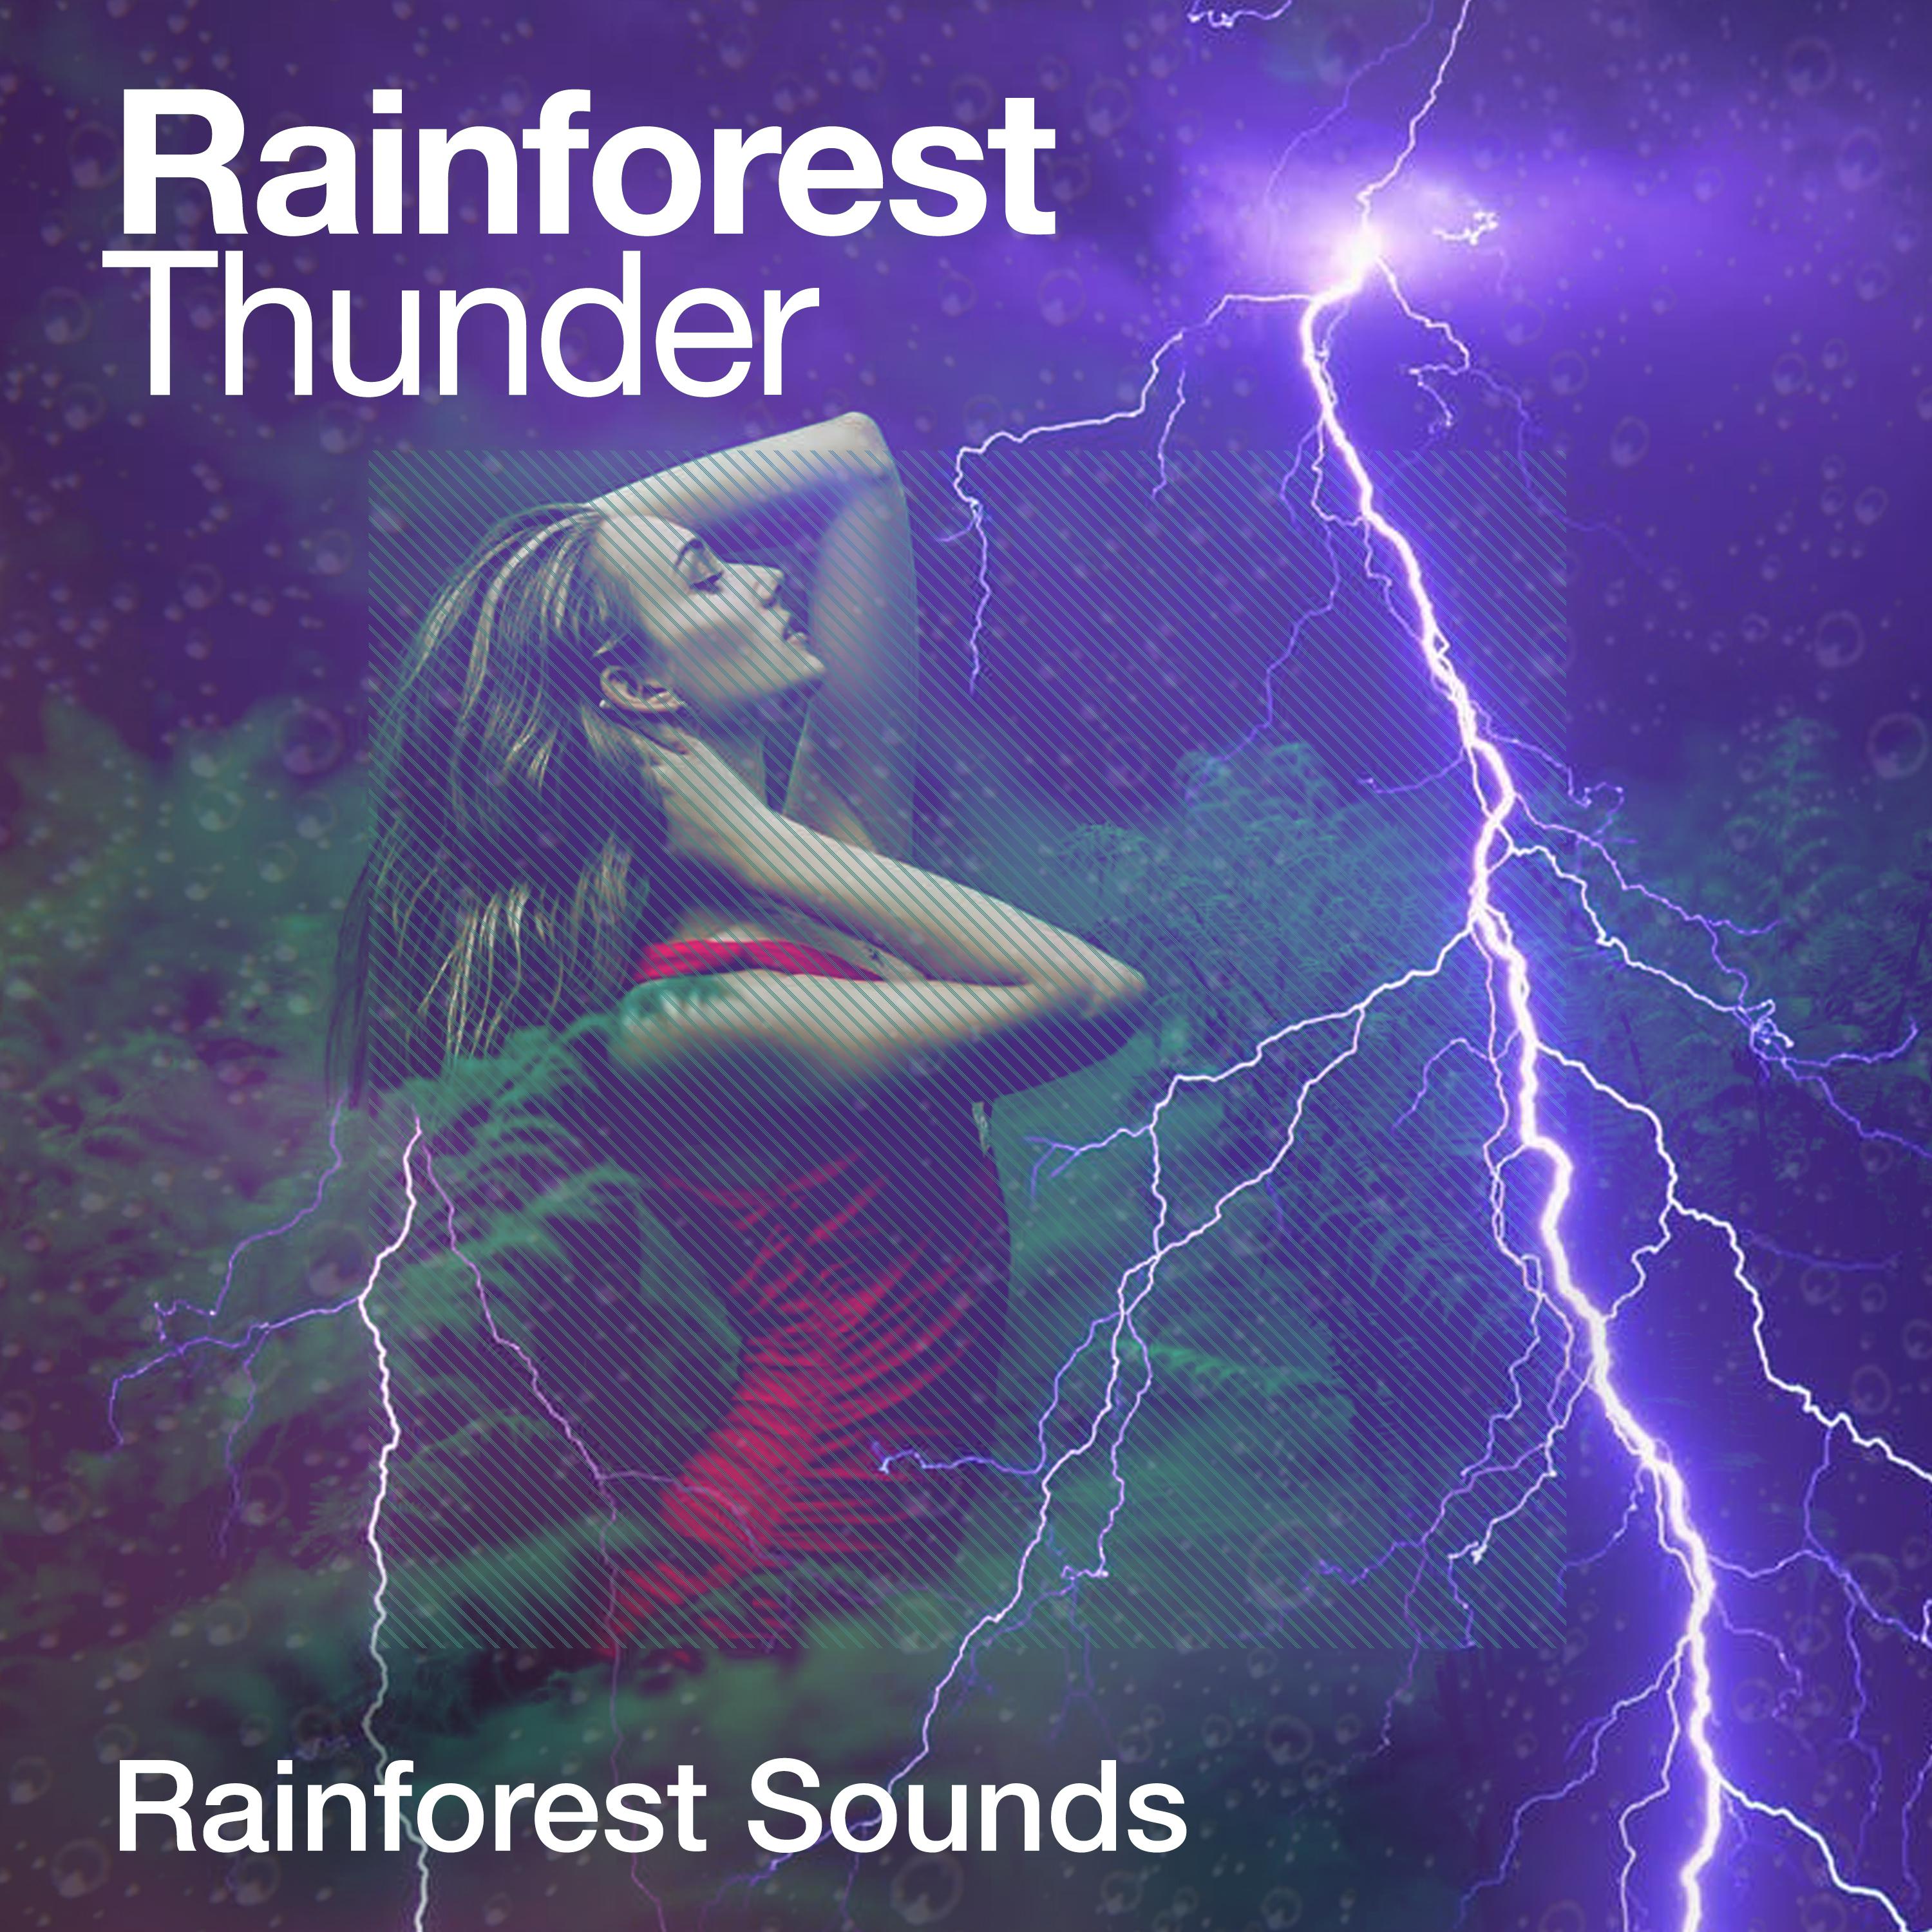 Rainforest Thunder